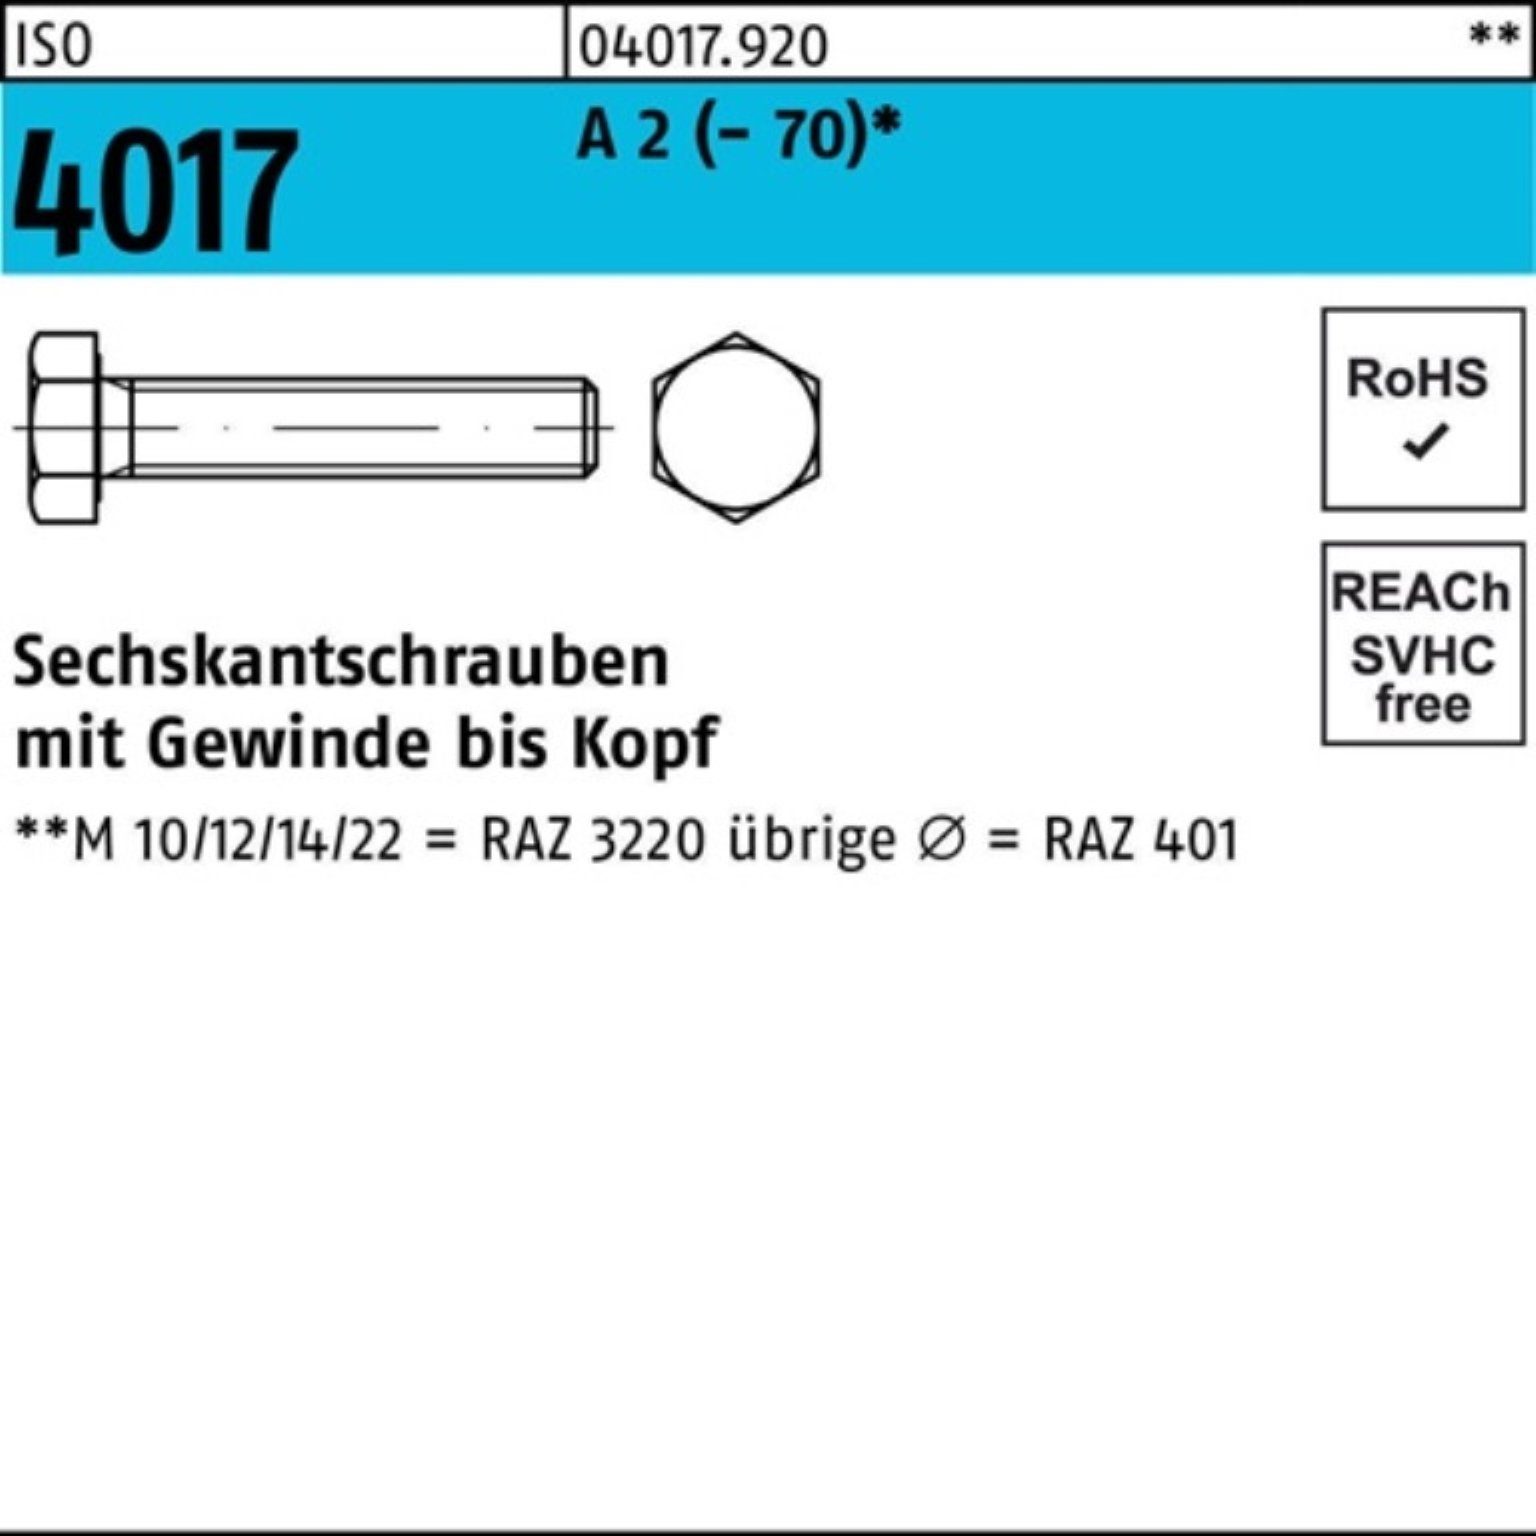 Bufab Sechskantschraube 200er Pack Sechskantschraube ISO 4017 VG M8x 18 A 2 (70) 200 Stück